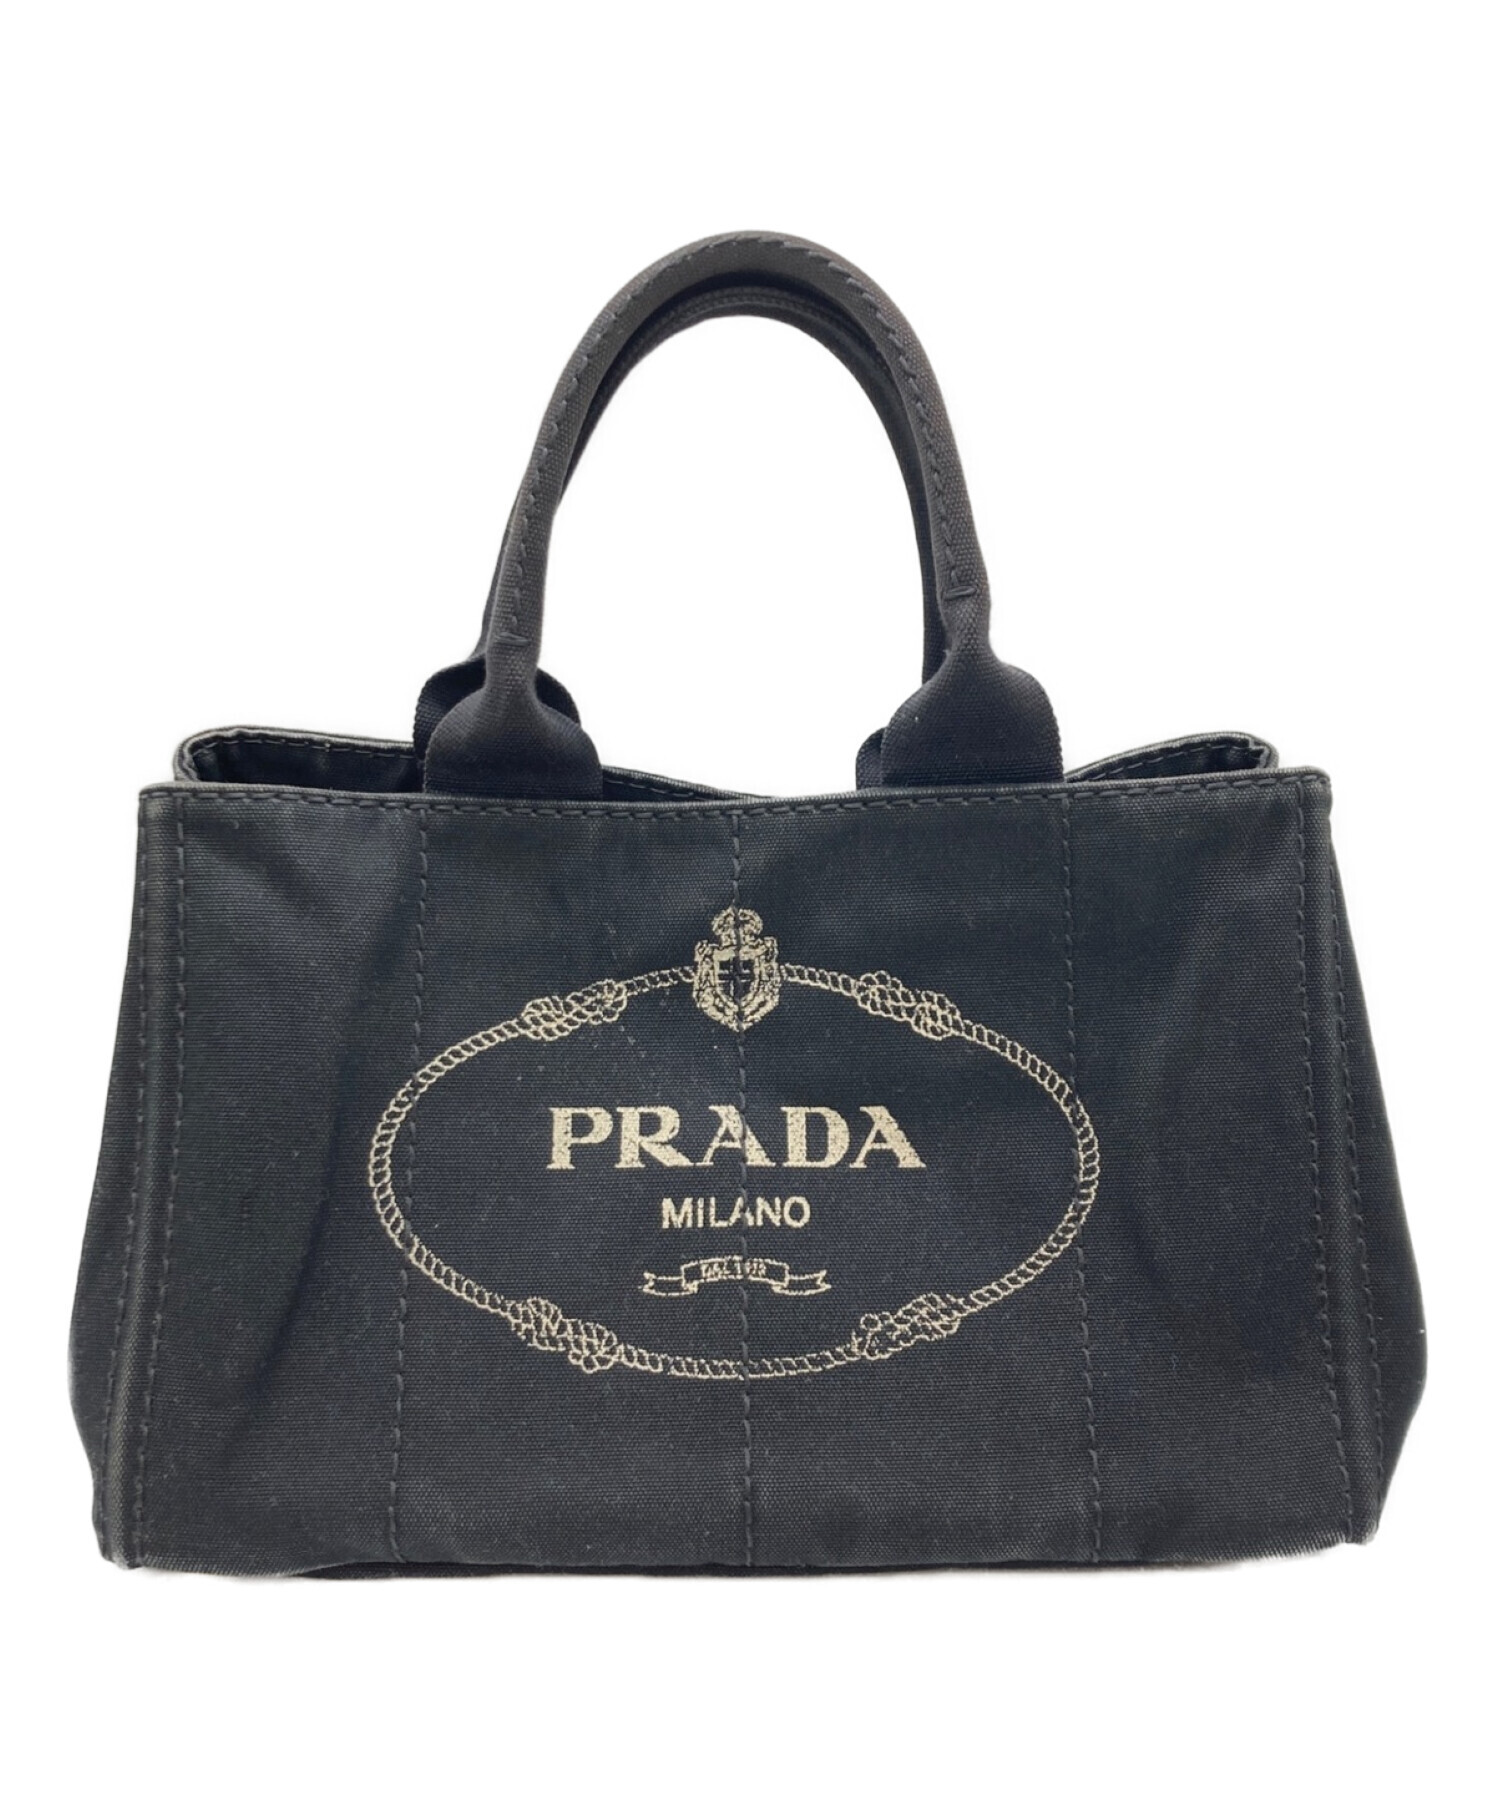 ○サイズ【PRADA】プラダ カナパトートバッグ